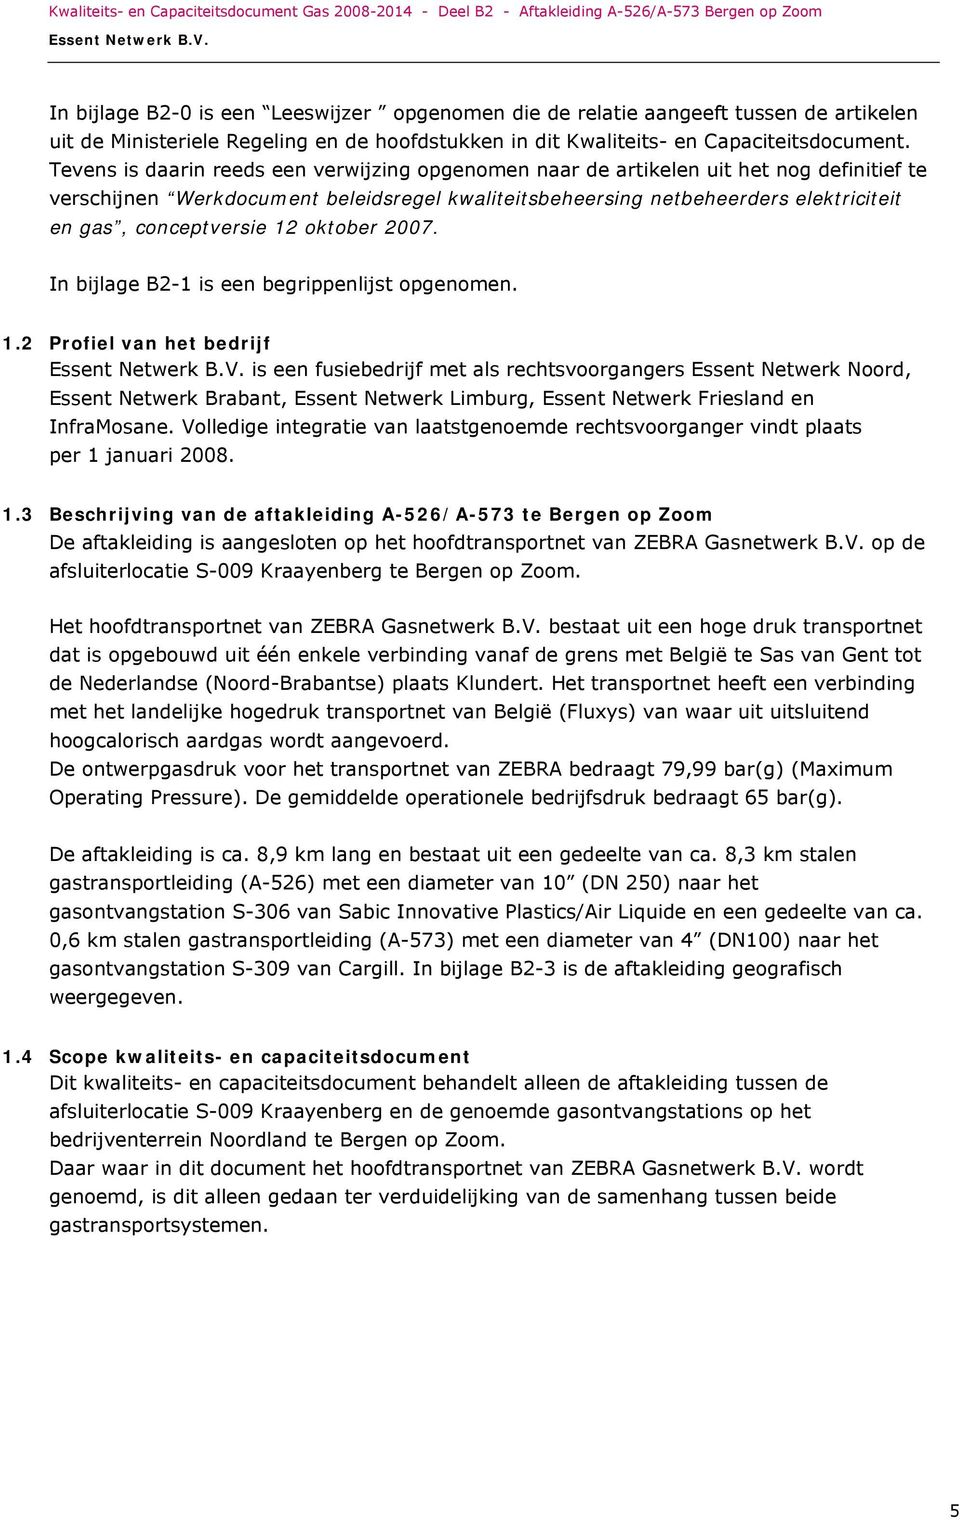 conceptversie 12 oktober 2007. In bijlage B2-1 is een begrippenlijst opgenomen. 1.2 Profiel van het bedrijf is een fusiebedrijf met als rechtsvoorgangers Essent Netwerk Noord, Essent Netwerk Brabant, Essent Netwerk Limburg, Essent Netwerk Friesland en InfraMosane.